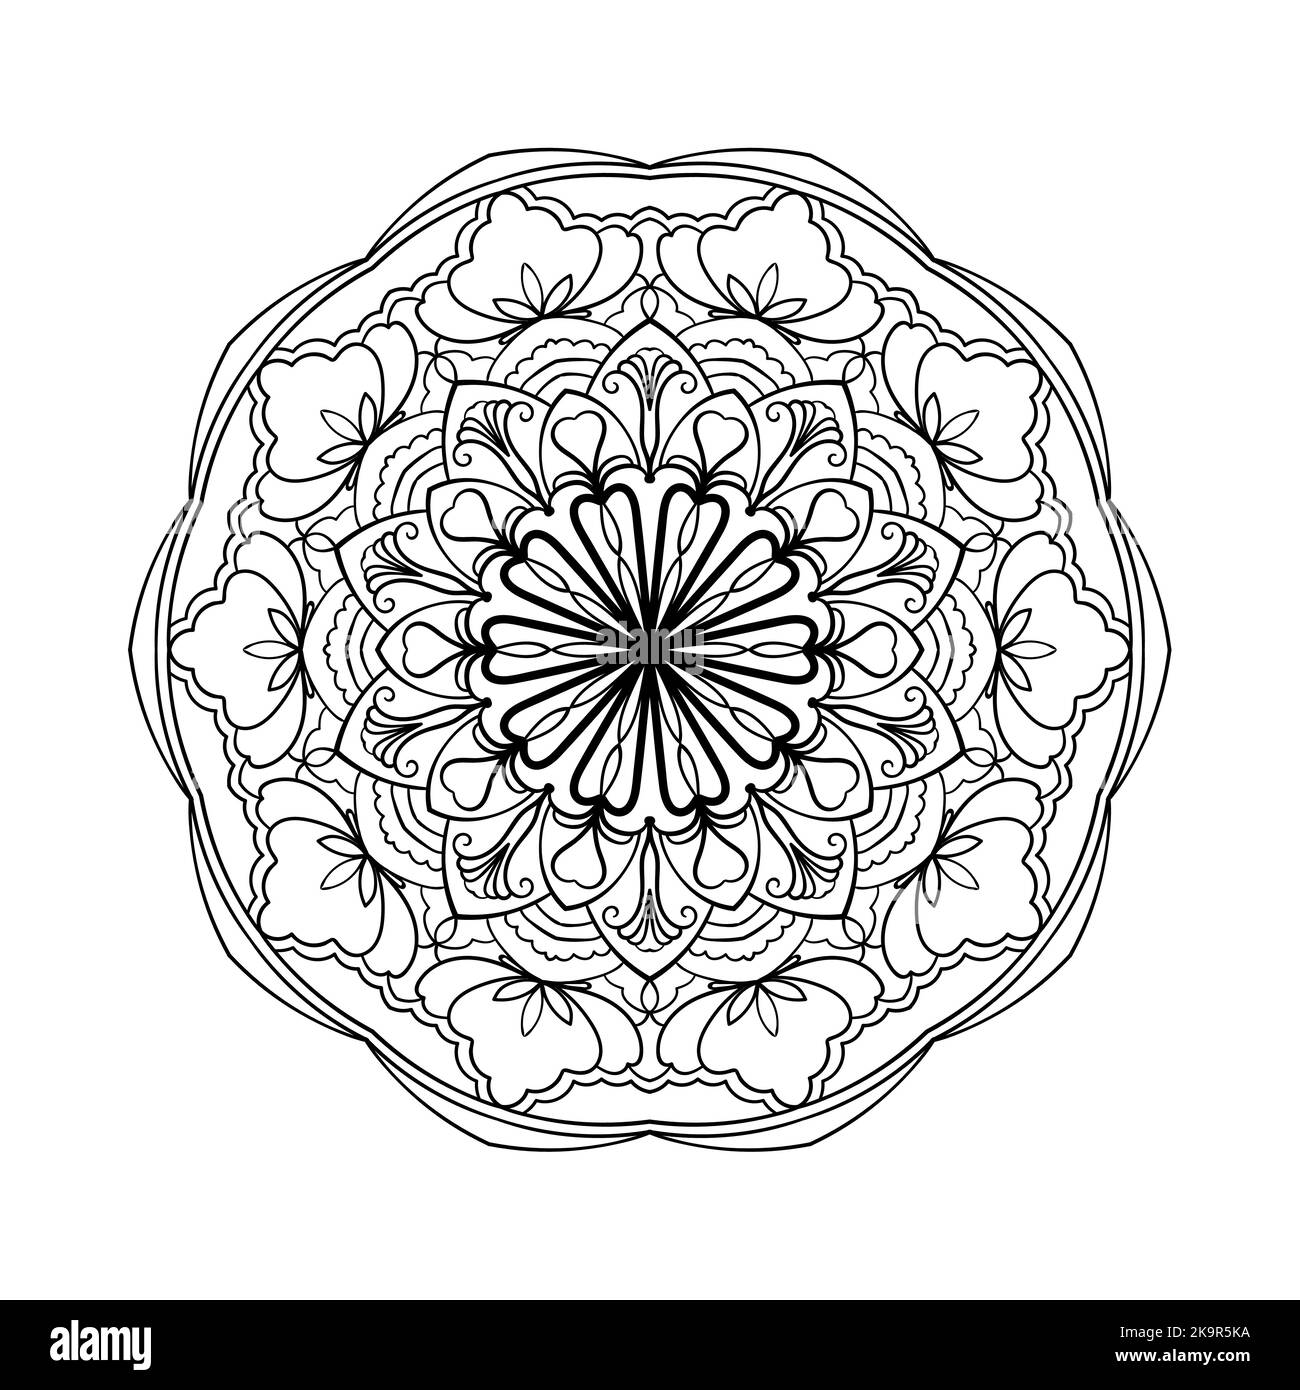 Abstraktes Mandala. Dekoratives Gestaltungselement für Yogamatte, Bezug, Wandteppich. Ornament im Kreis. Rundes Blumenmuster. Indische, türkische, arabische Motive. C Stock Vektor